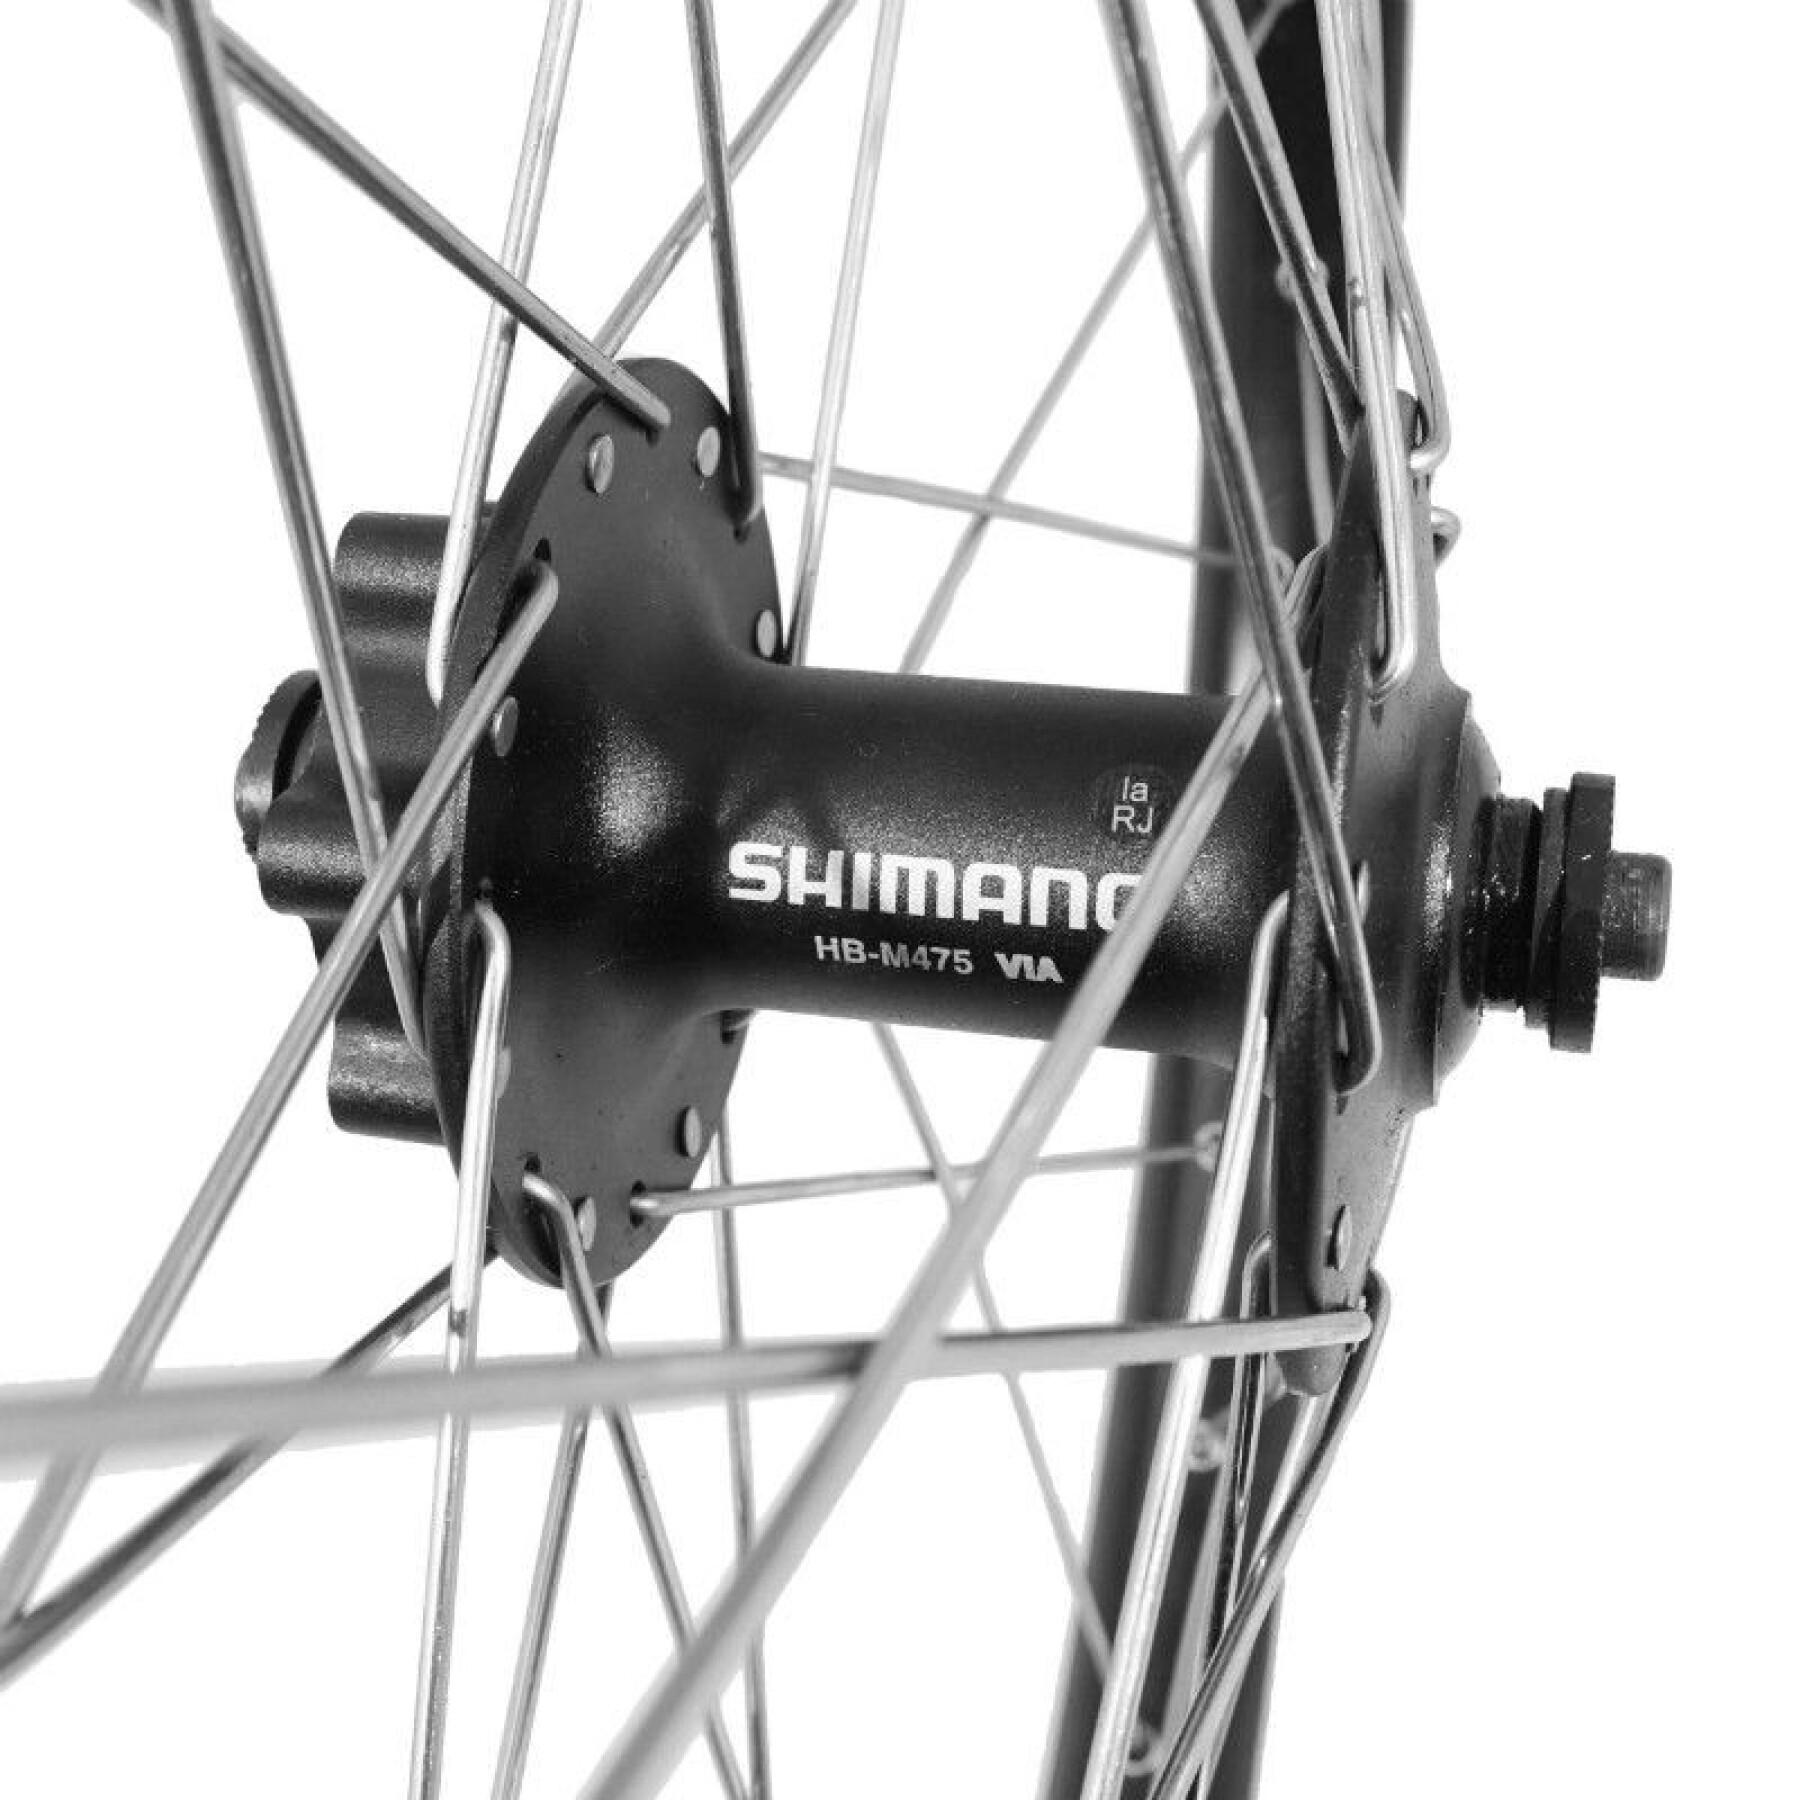 MTB-Fahrradvorderrad Disc Aluminium doppelwandig Nabe shimano Disc 6 Loch Blockierung (verstärkt) Speiche Edelstahl Velox Kargo - Vae - E-Bike M475